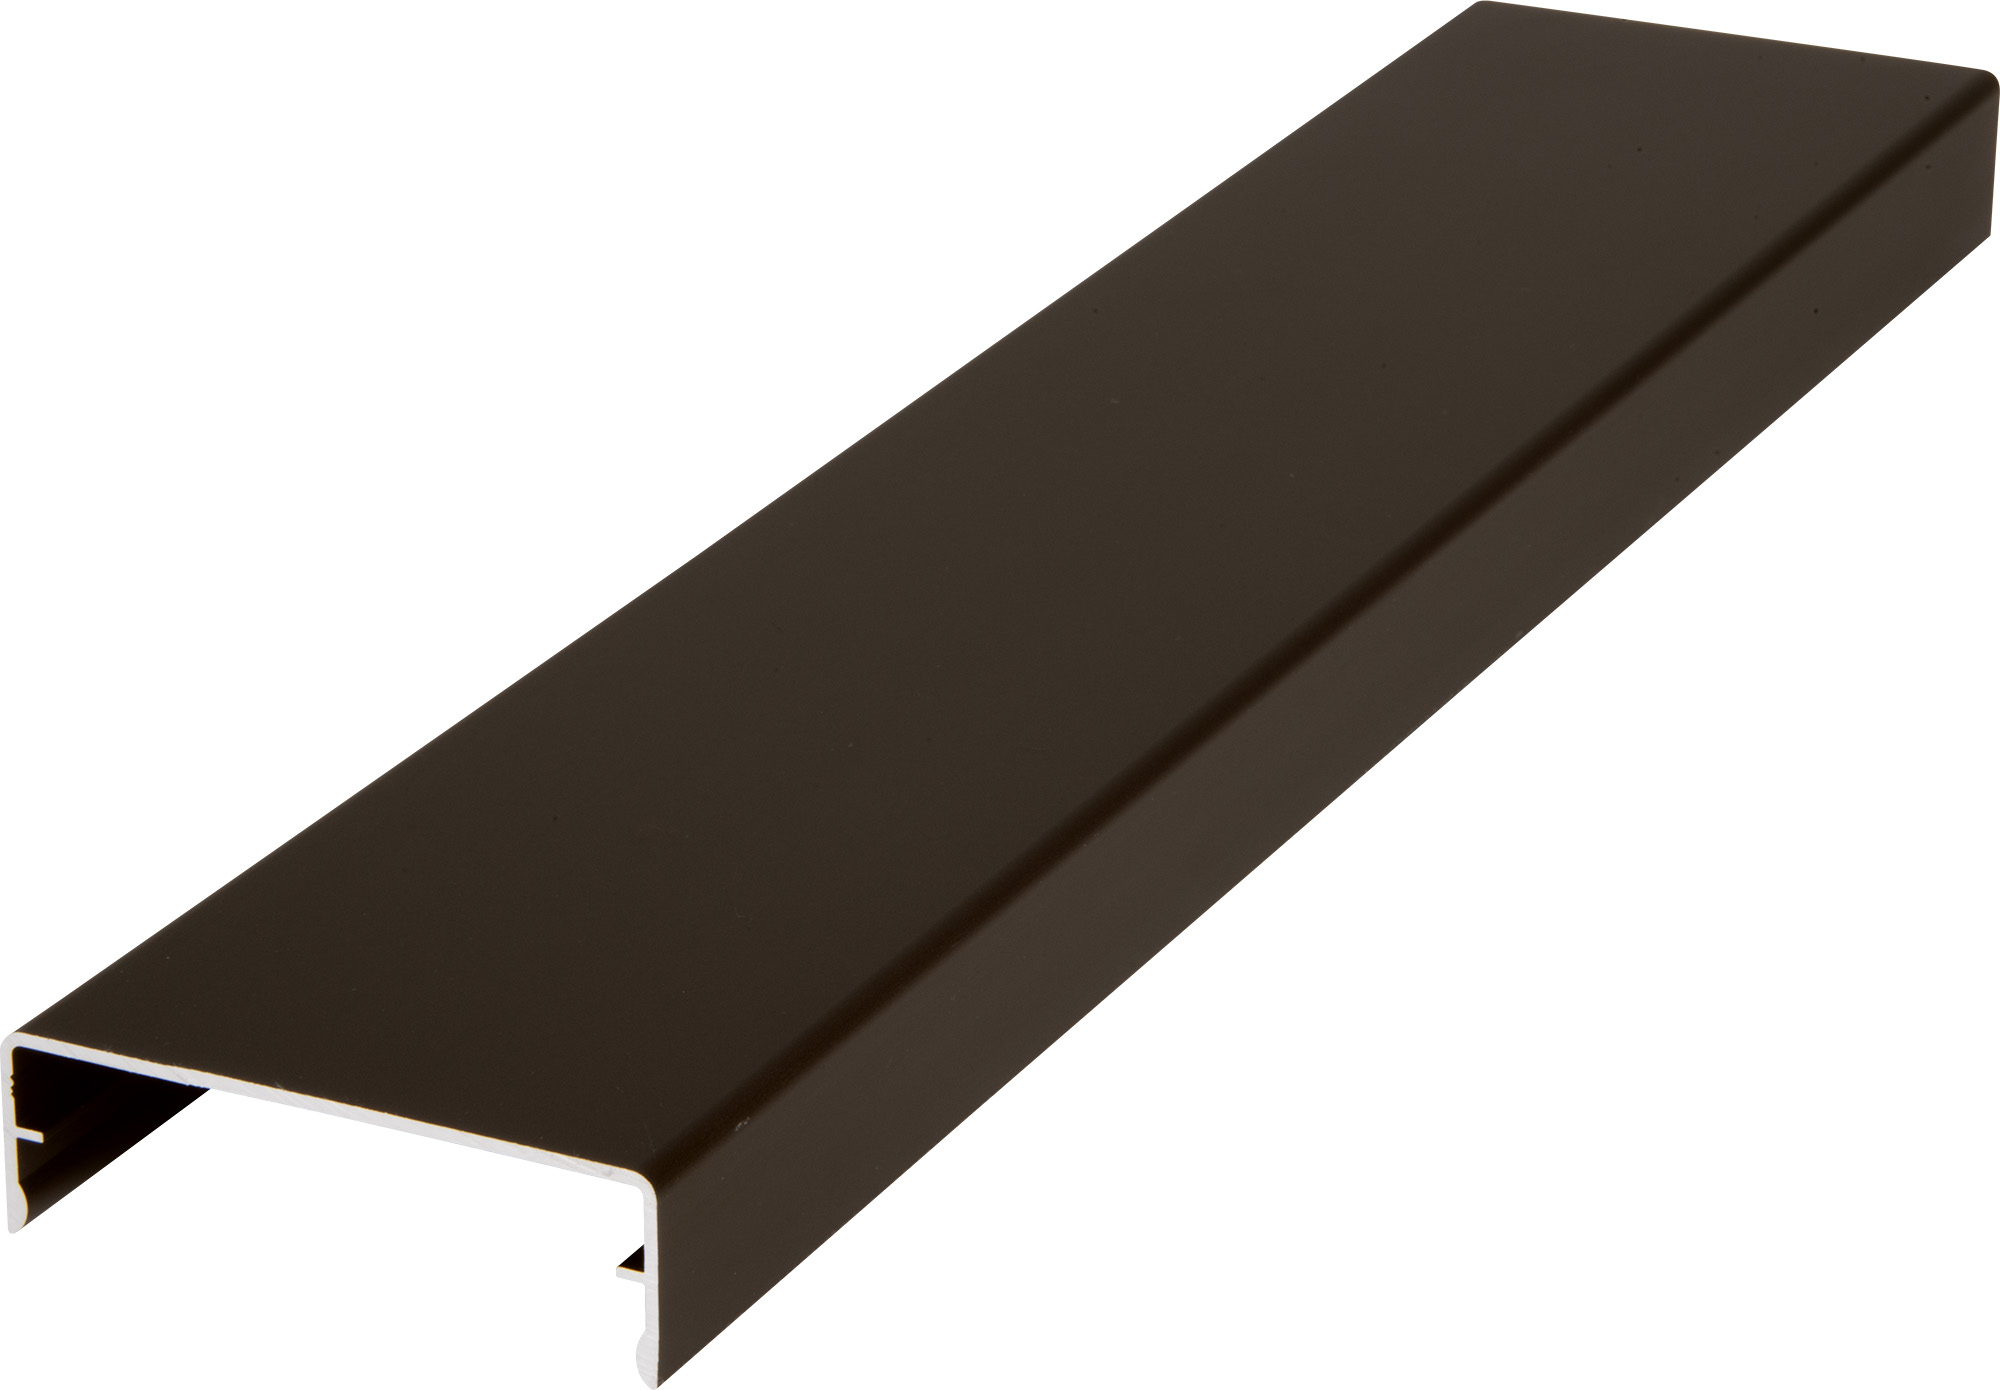 Krytka upevňovacího profilu hliníková elox bronz délka 6 m